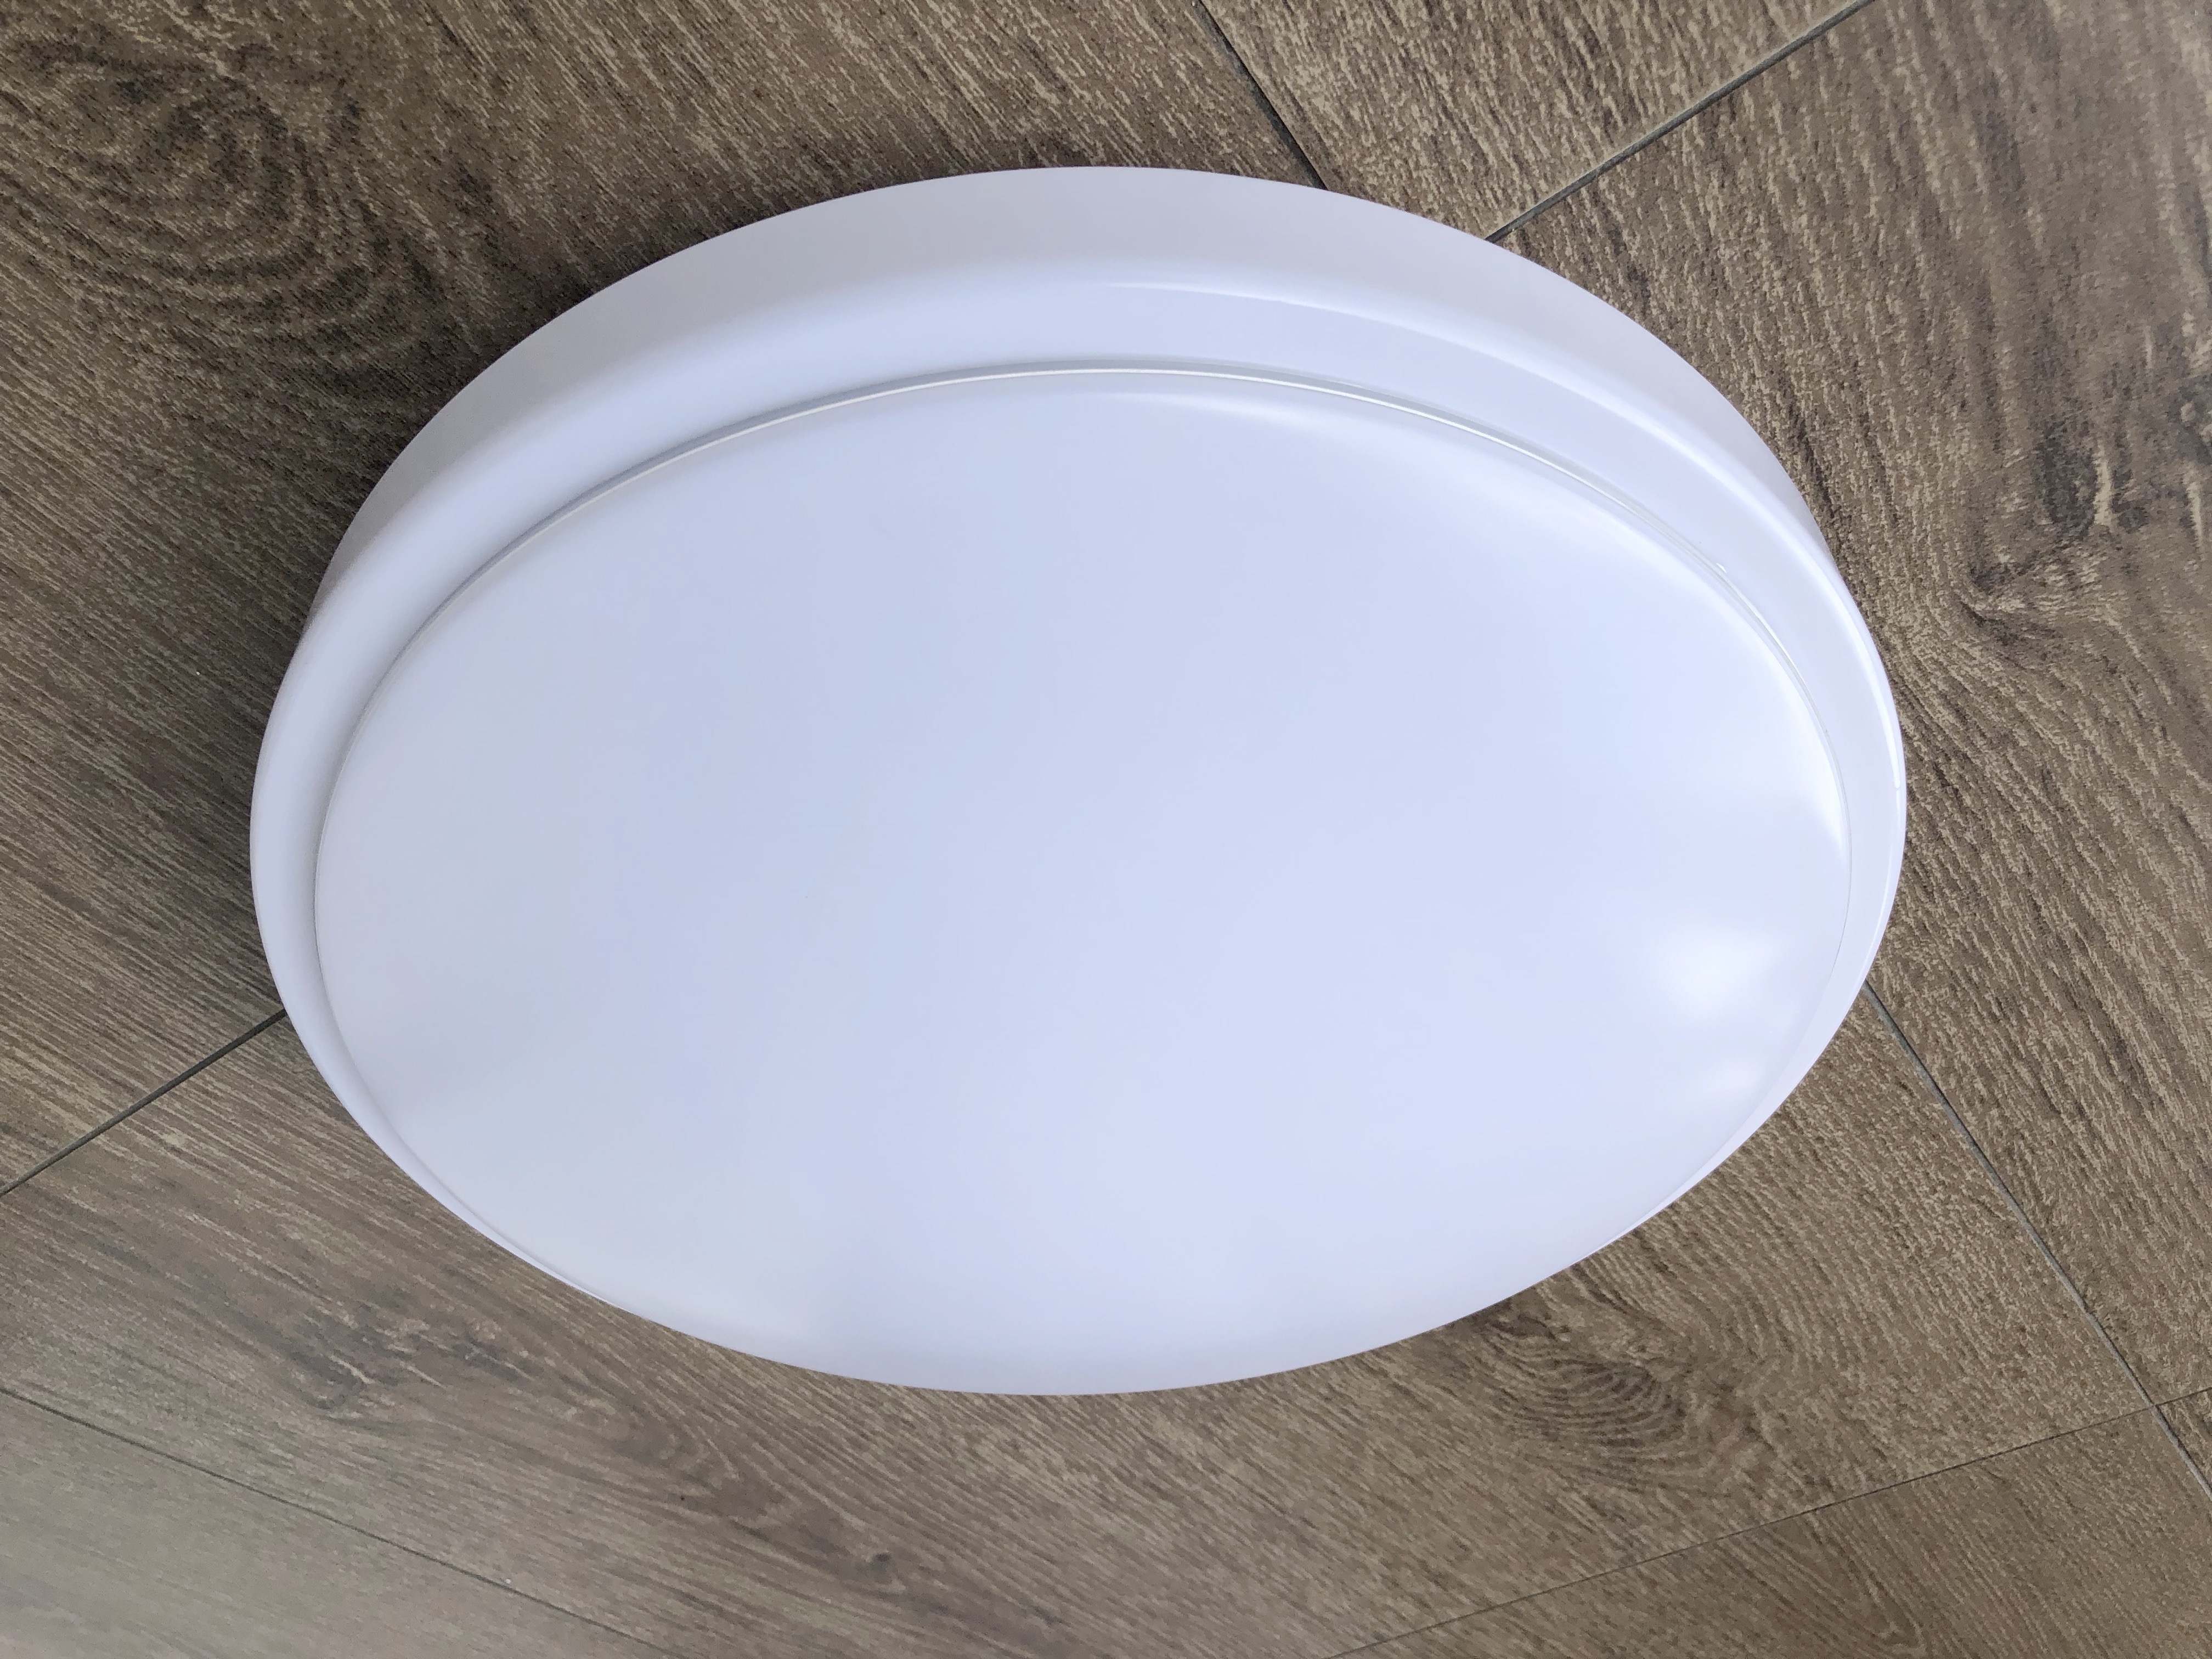 905 plain acrylic ceiling lamp